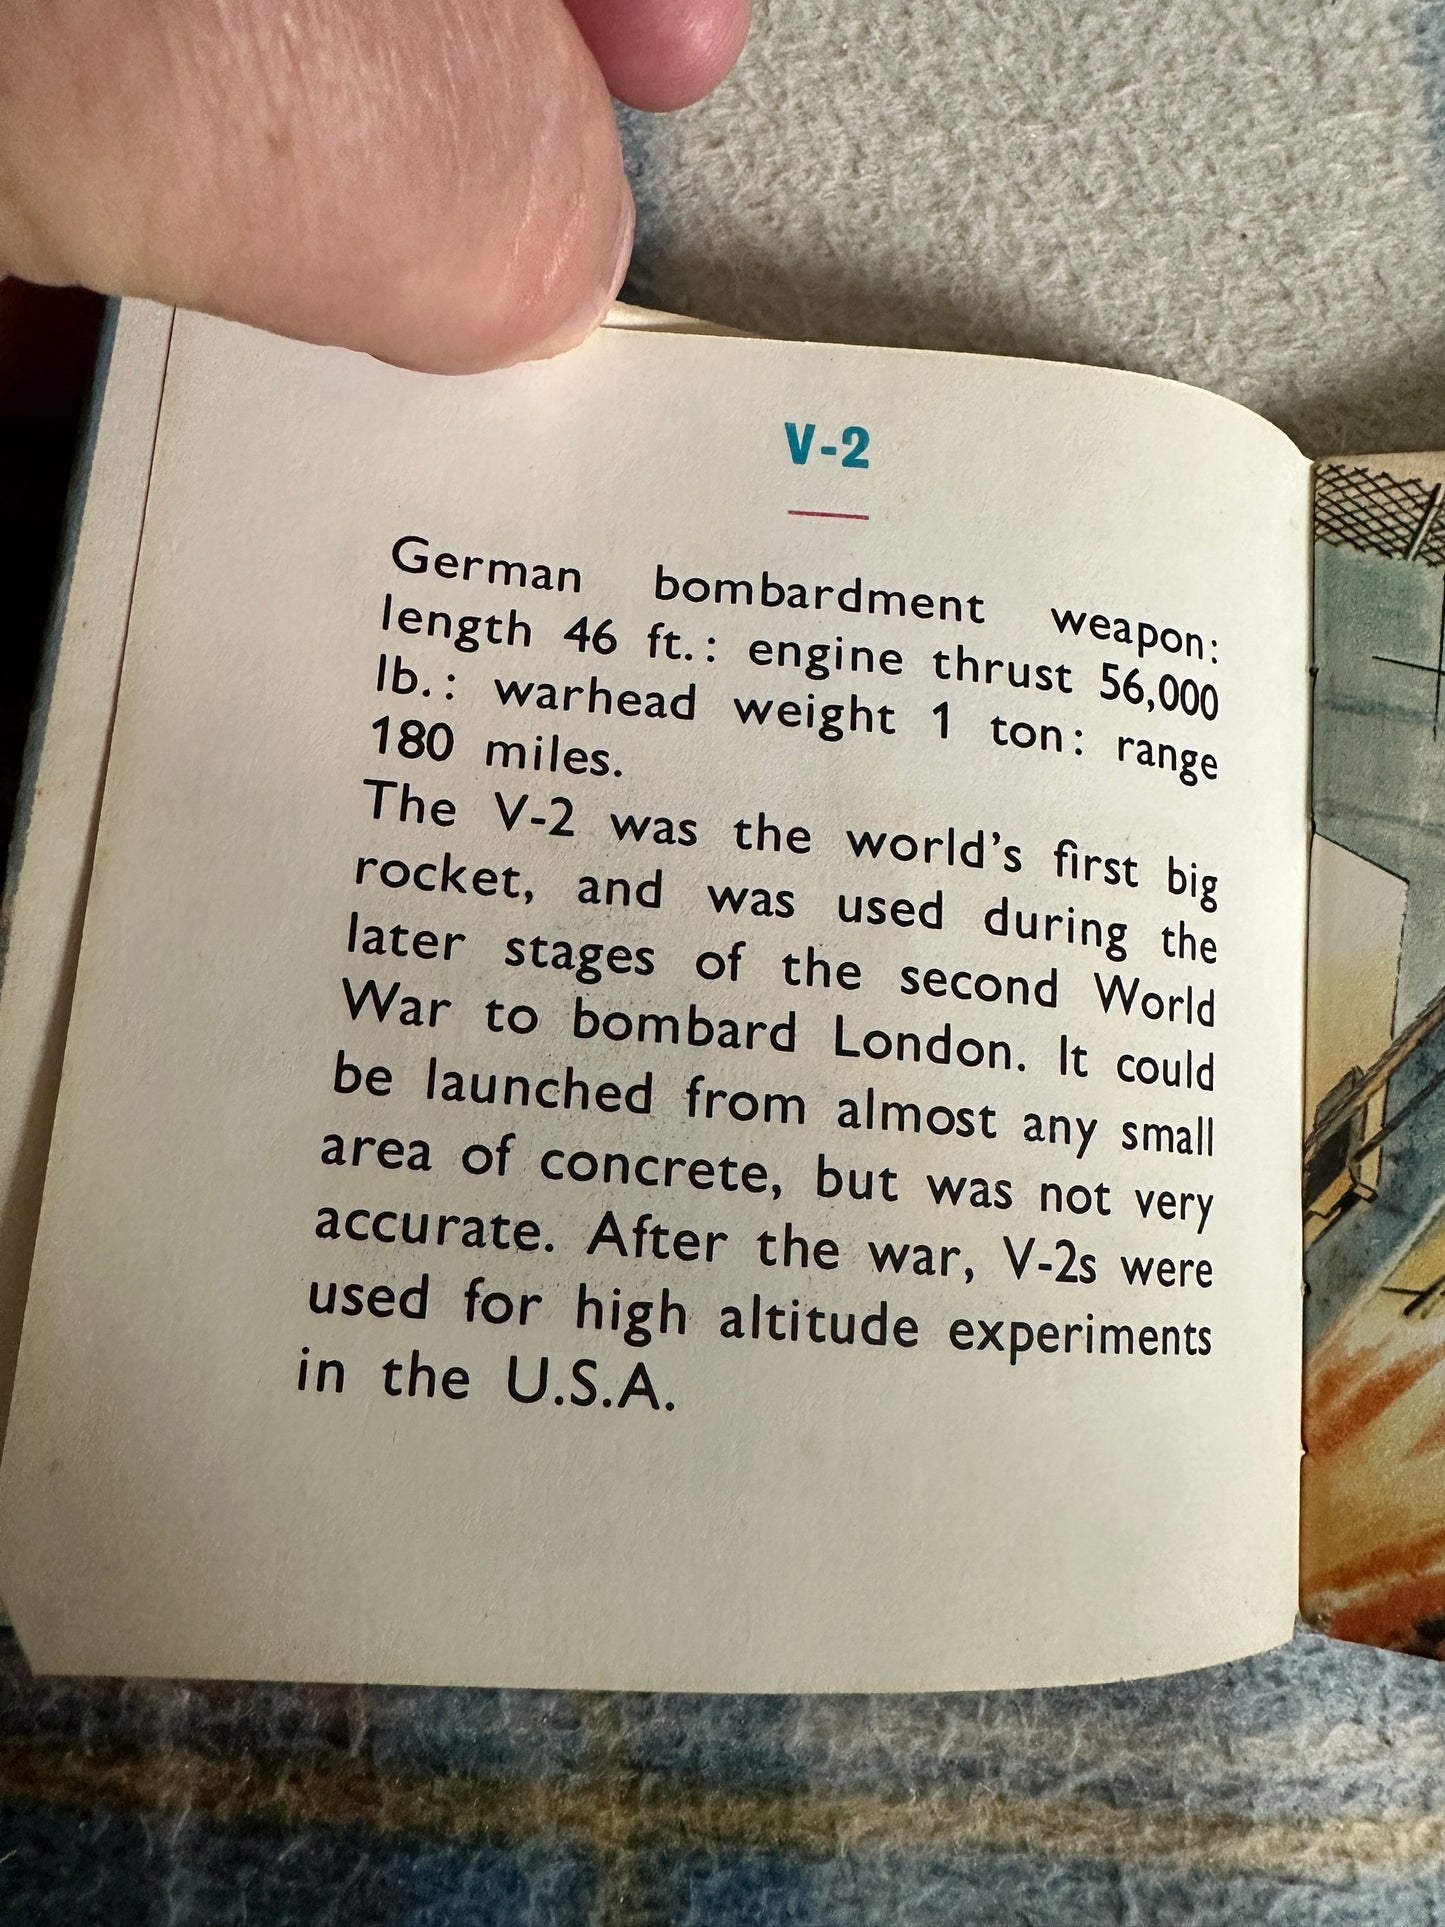 1960’s Rockets & Spacecraft(Book 1) Orbit Books (Collins)